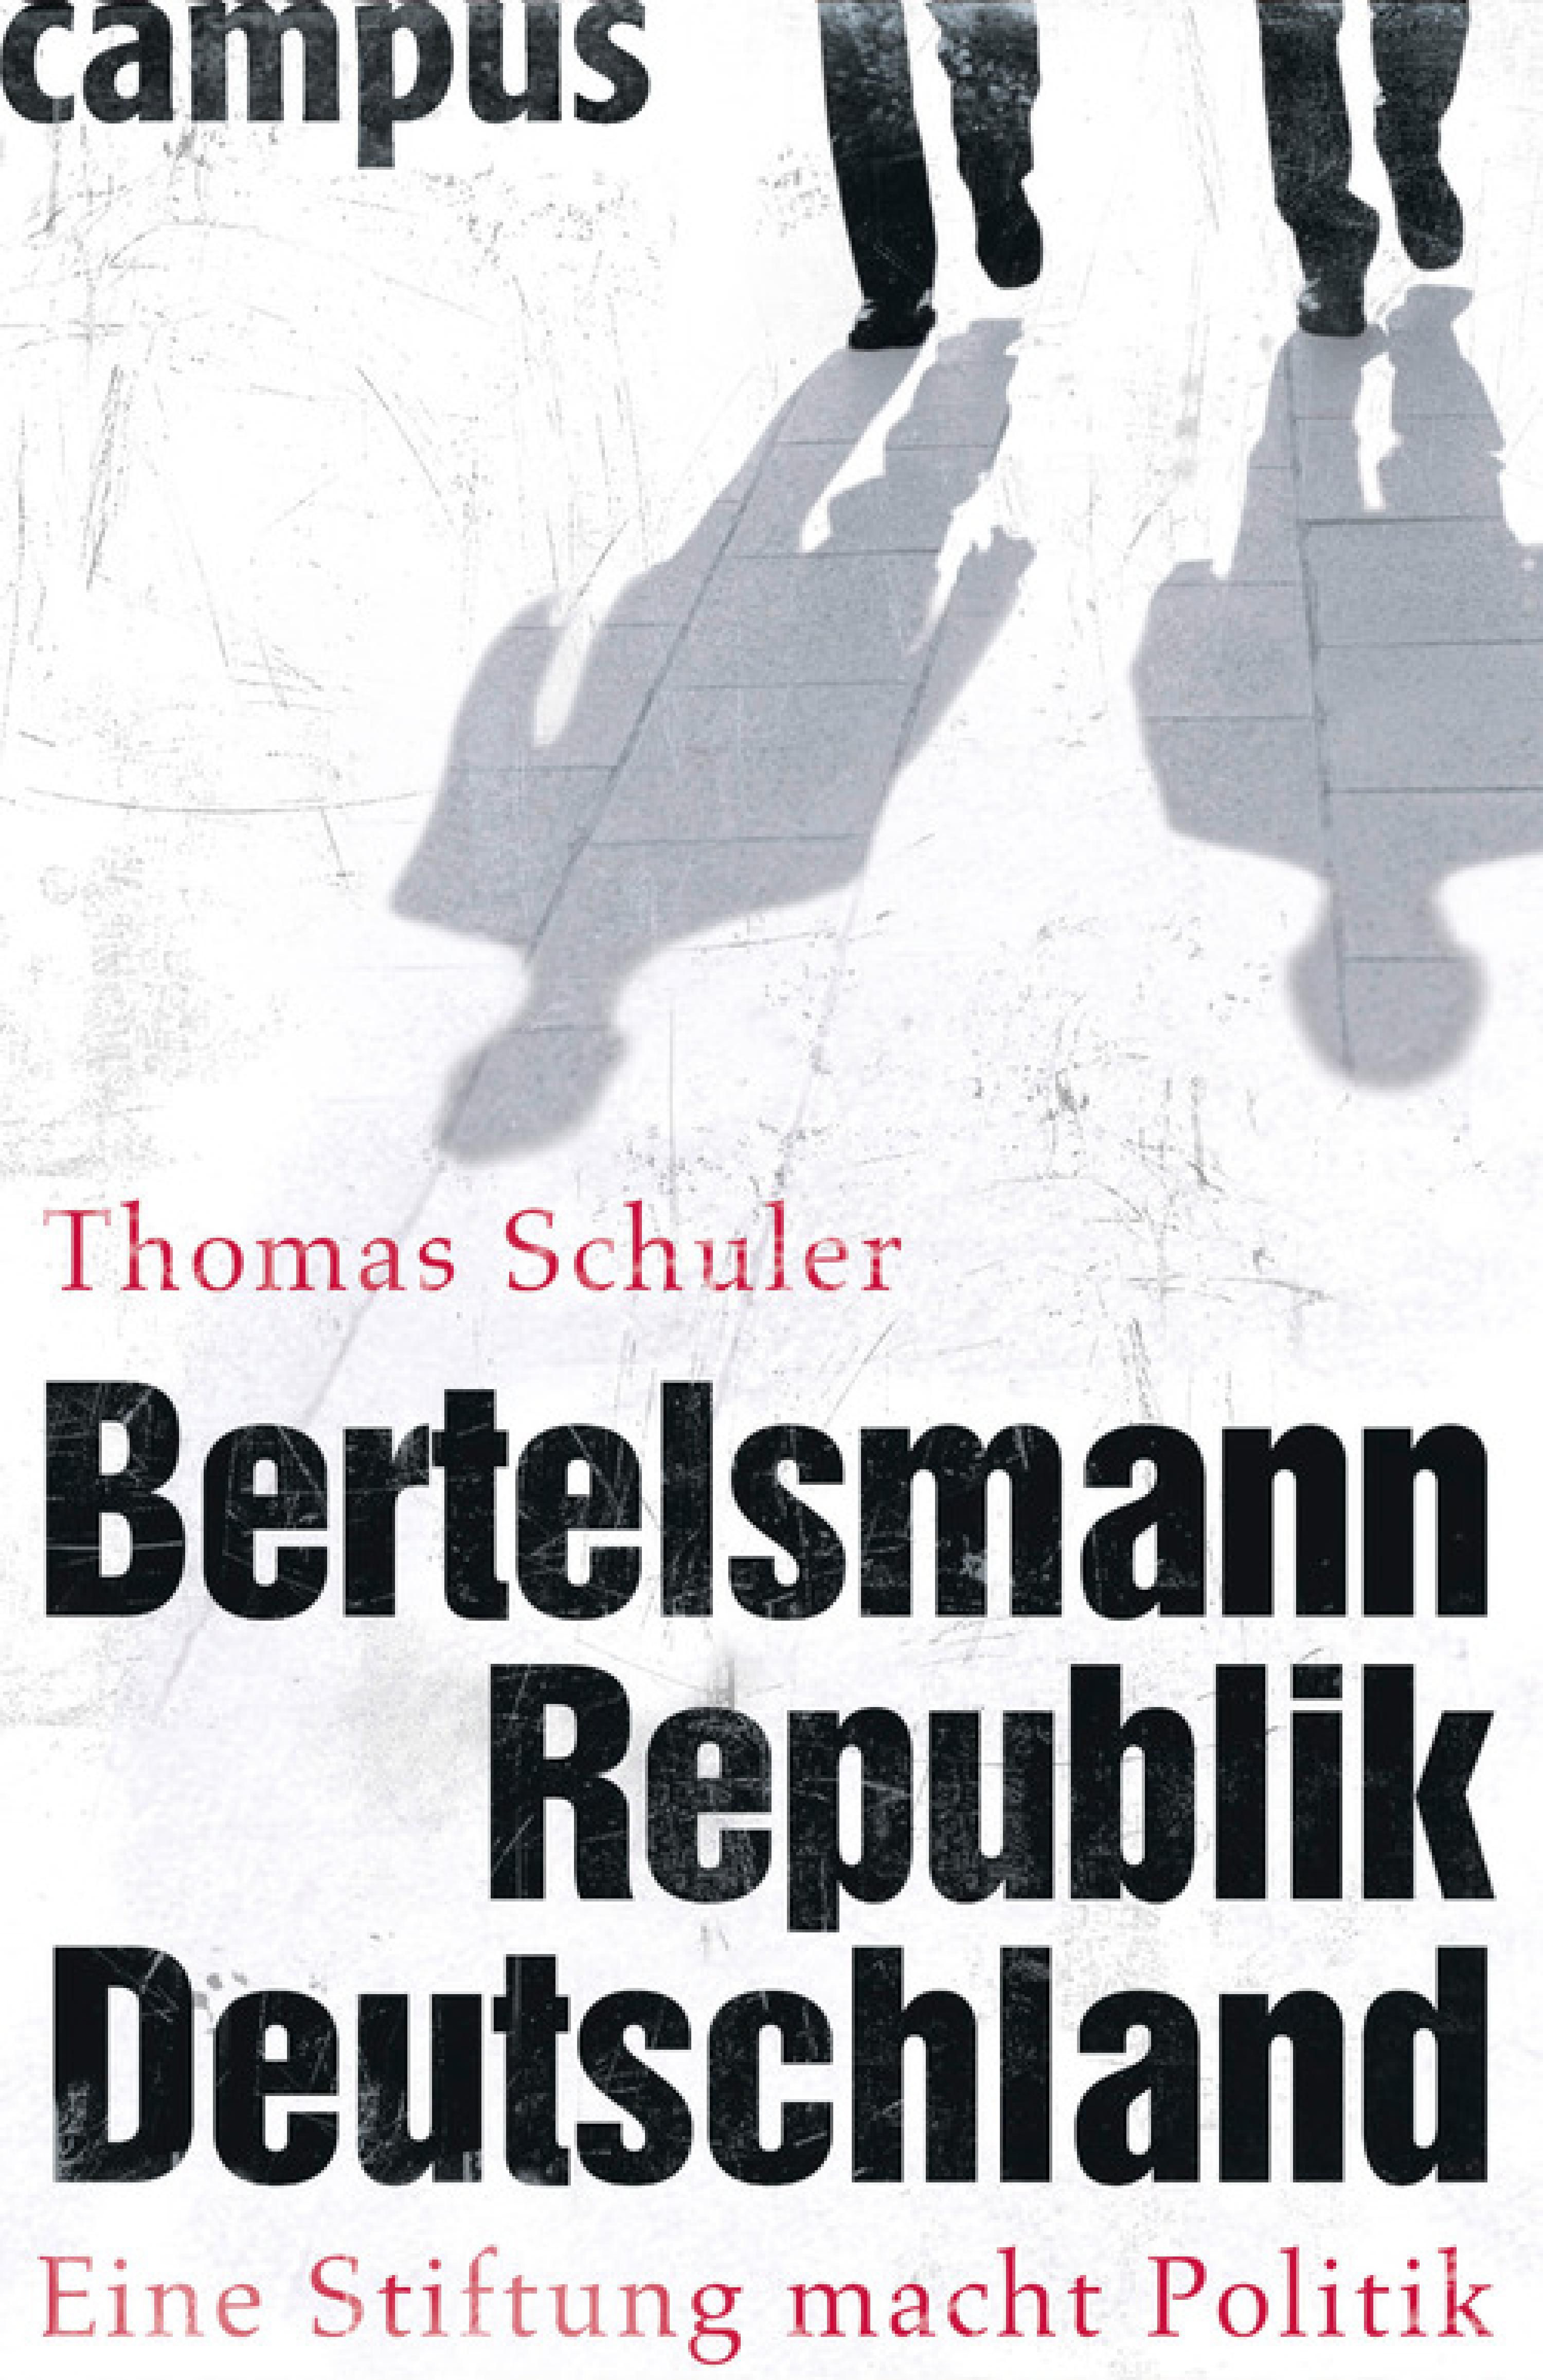 Bertelsmannrepublik Deutschland, ein E-Book von Thomas Schuler - Campus Verlag